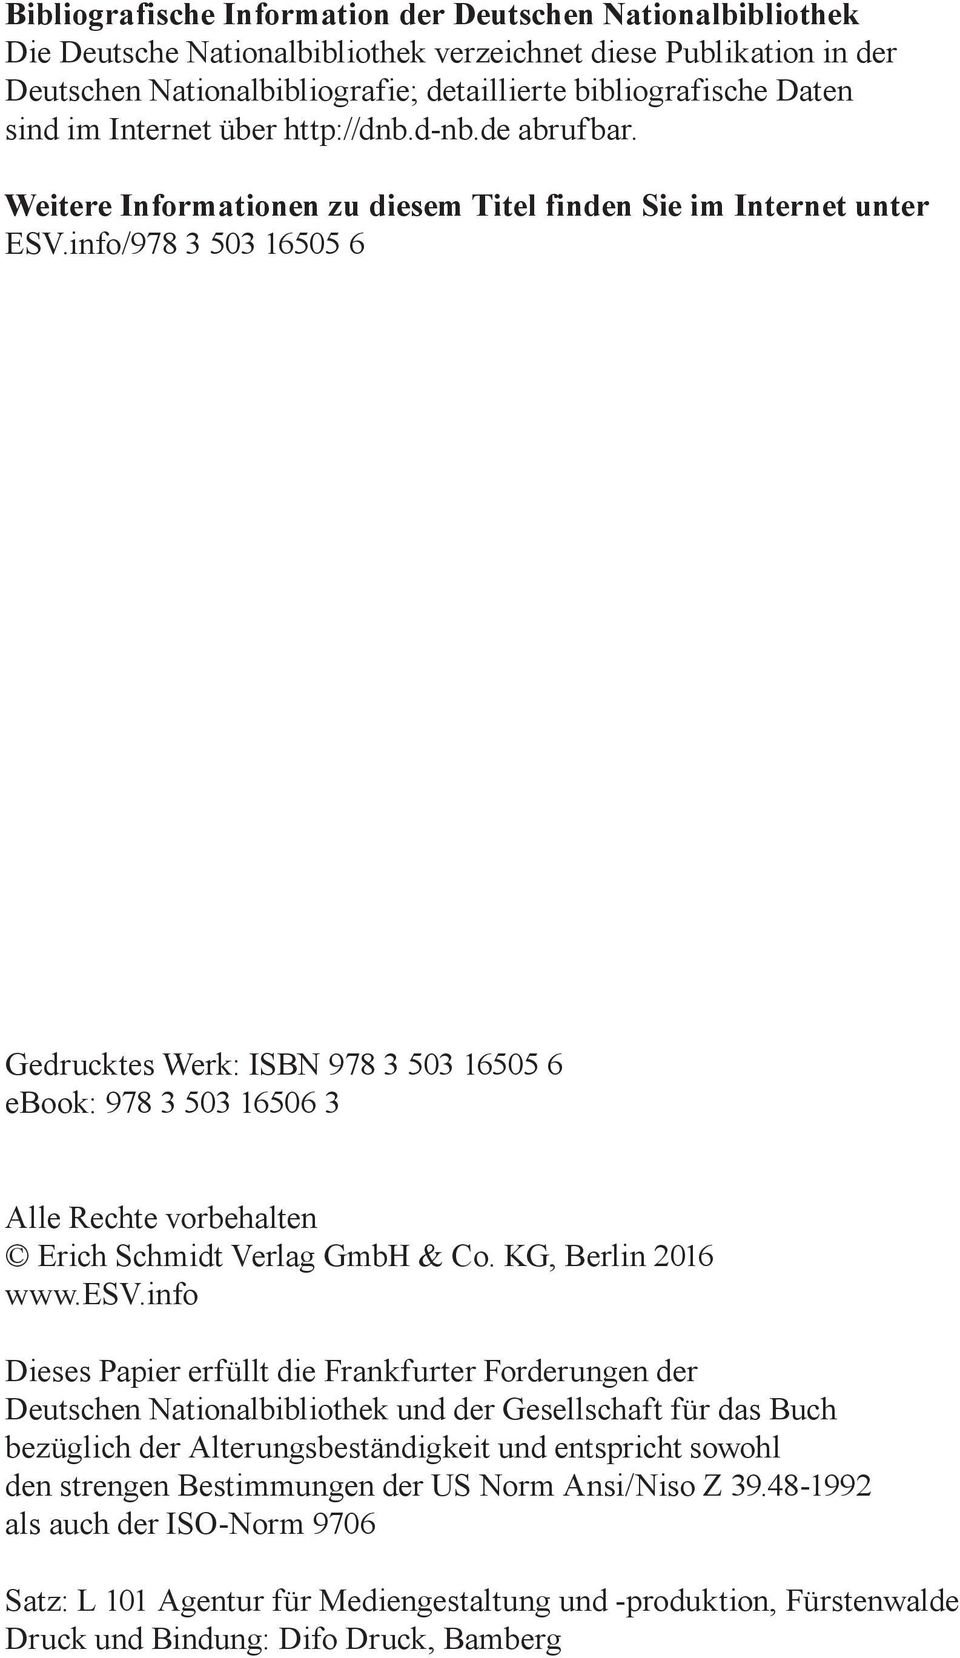 info/978 3 503 16505 6 Gedrucktes Werk: ISBN 978 3 503 16505 6 ebook: 978 3 503 16506 3 Alle Rechte vorbehalten Erich Schmidt Verlag GmbH & Co. KG, Berlin 2016 www.esv.